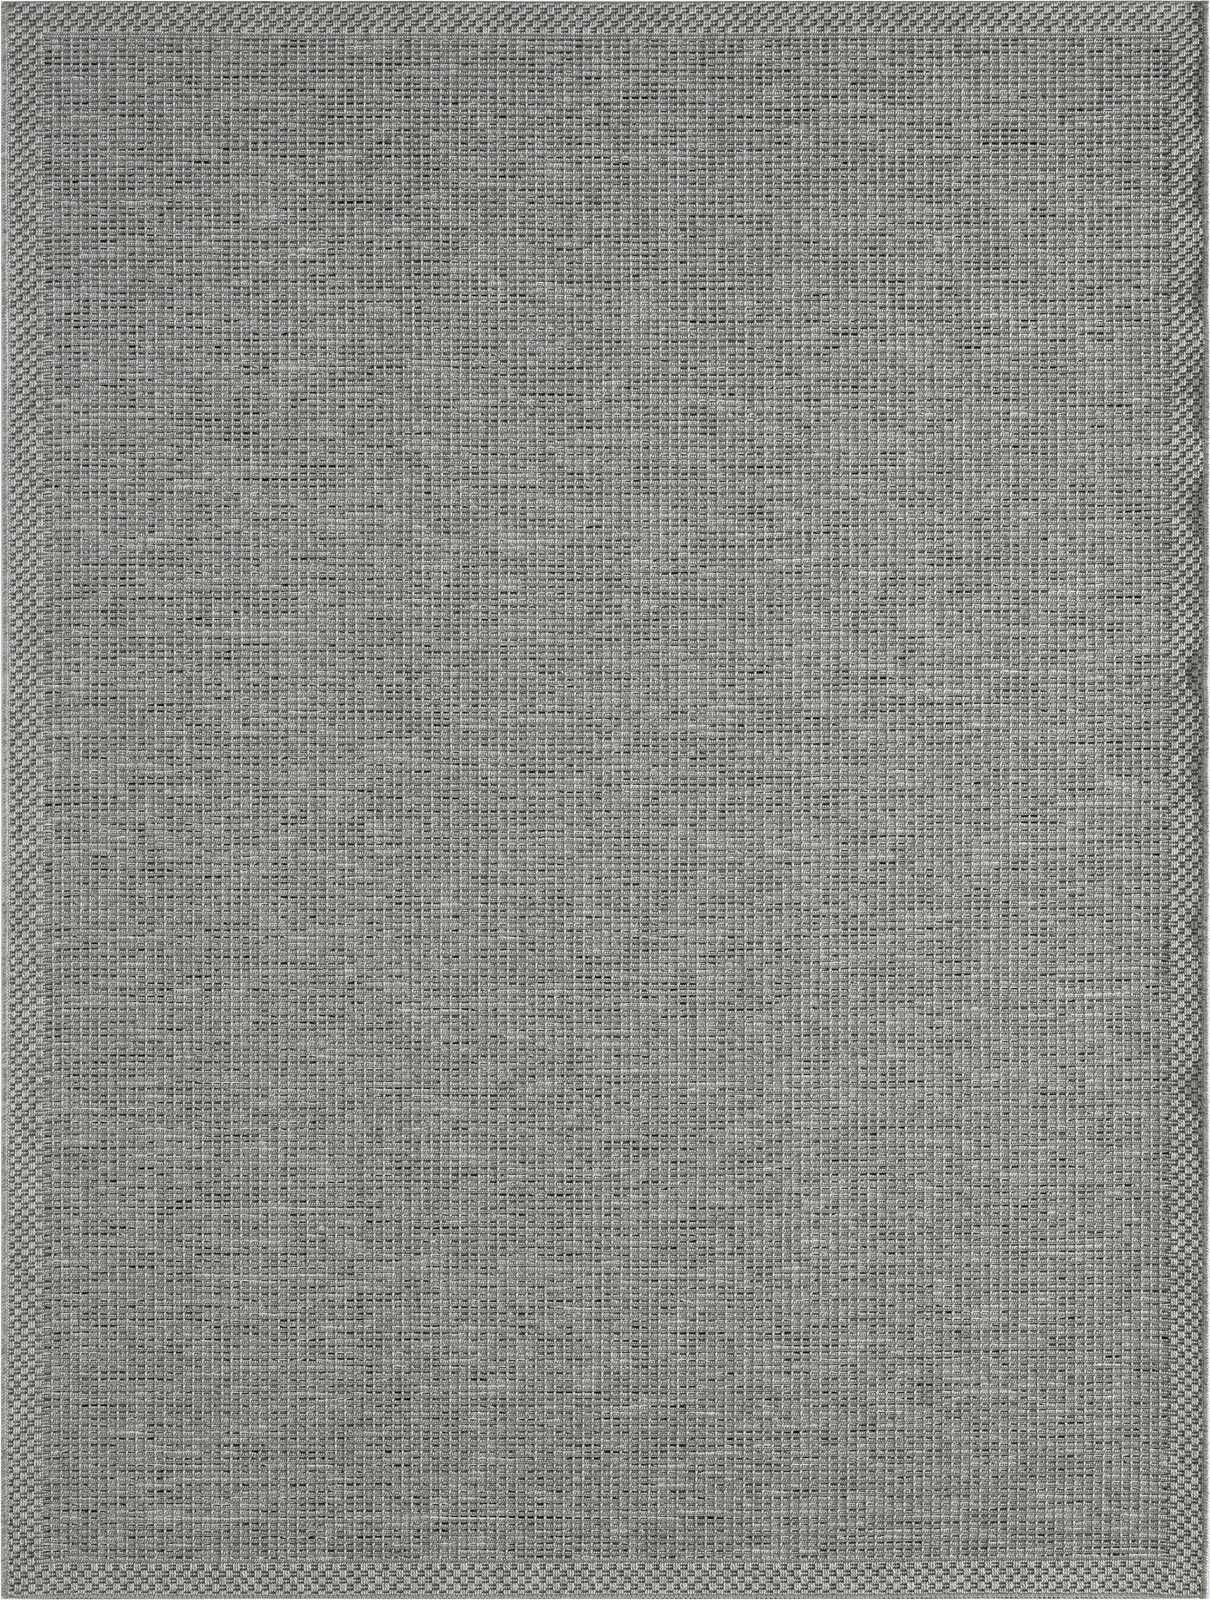             Eenvoudig vloerkleed voor buiten in grijs - 200 x 140 cm
        